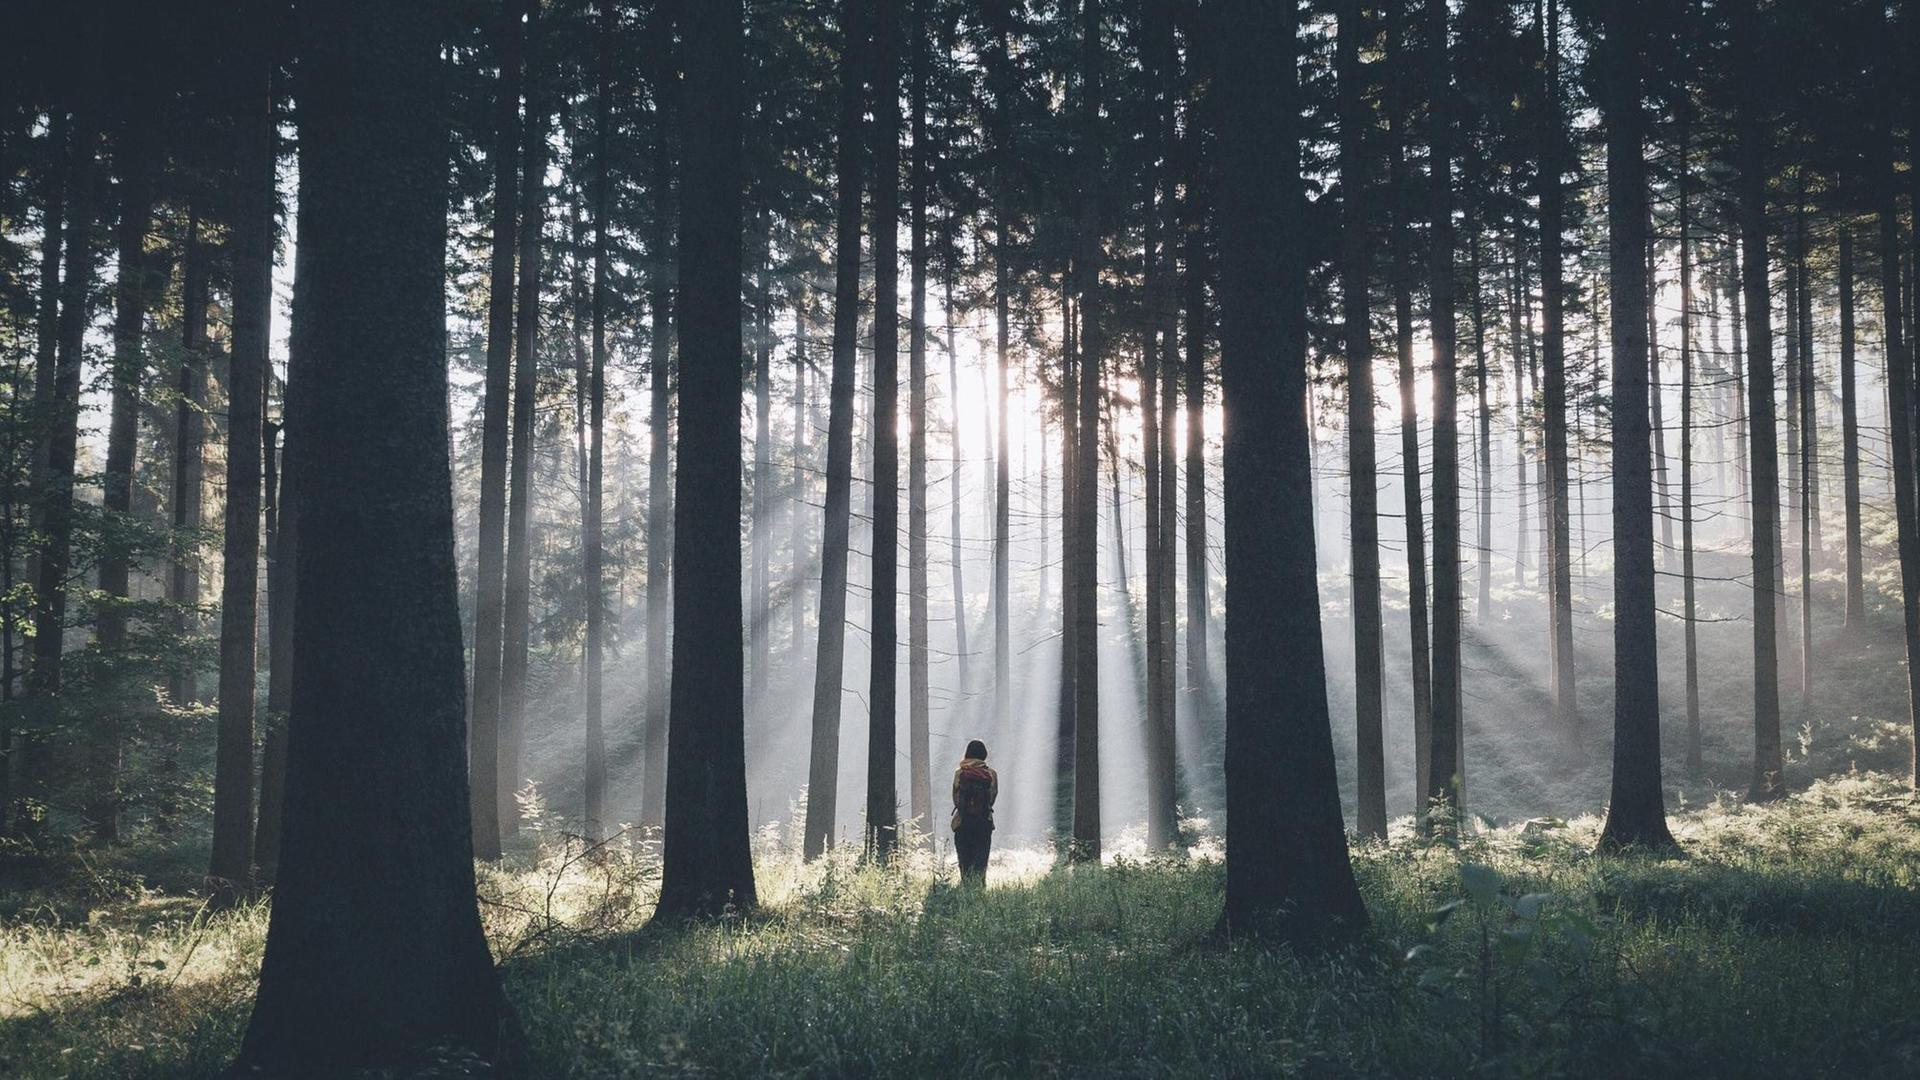 Ein Wanderer durchquert einen dichten Wald